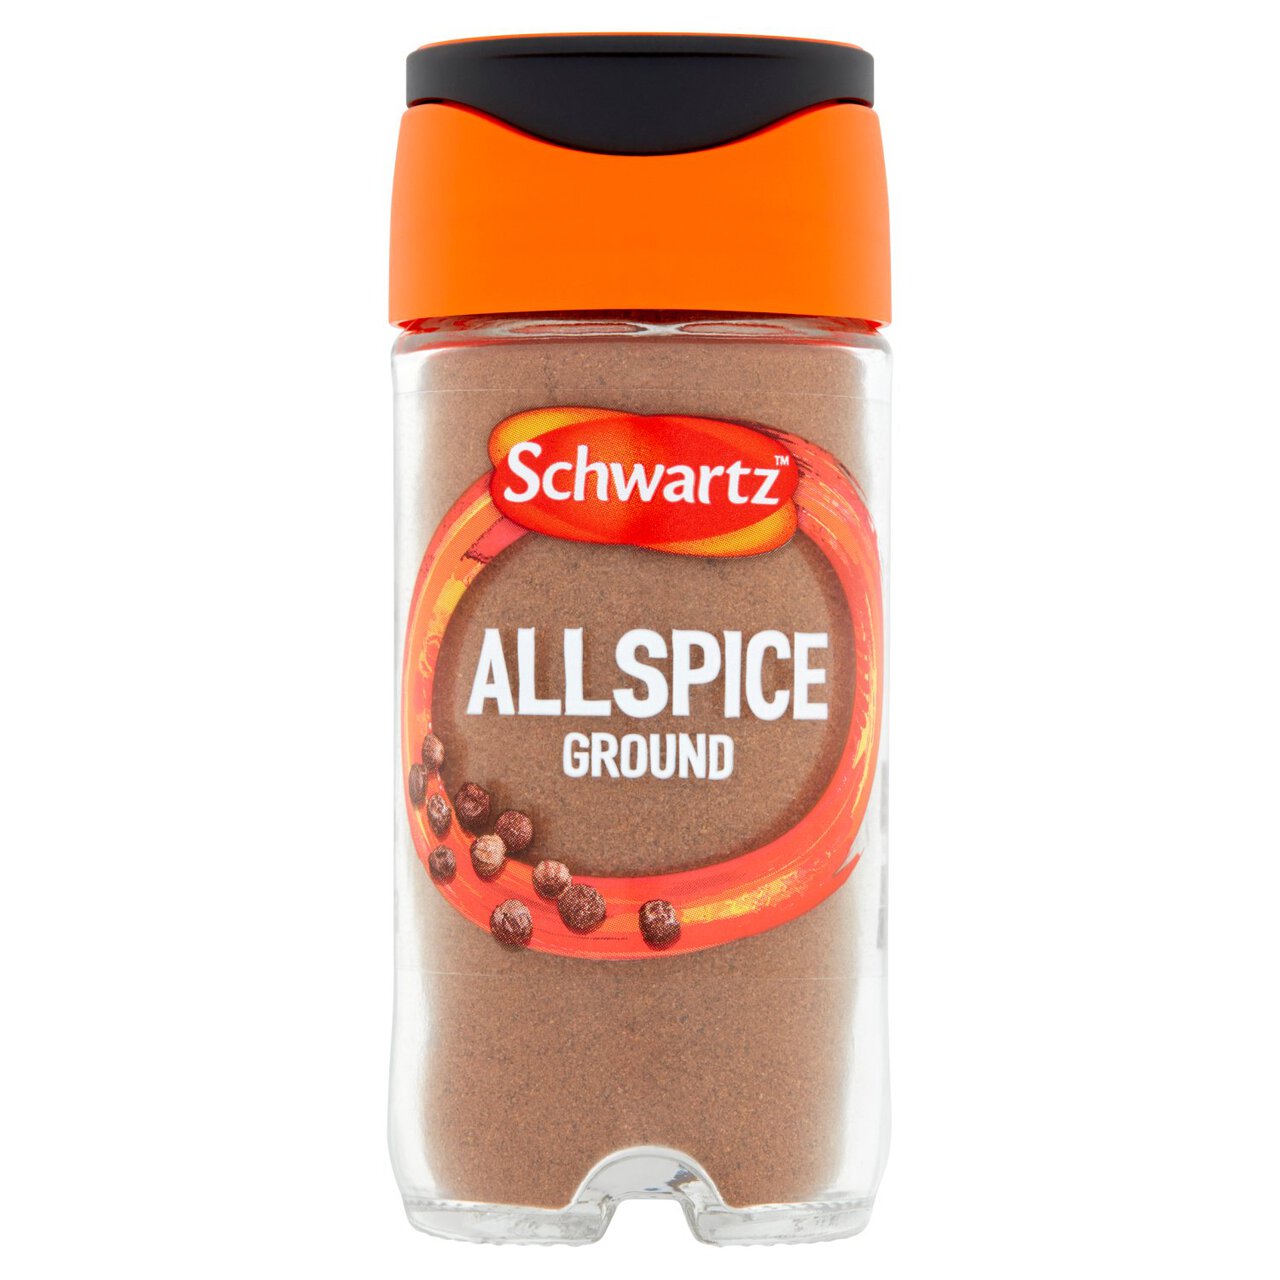 Schwartz Ground Allspice Jar 37g